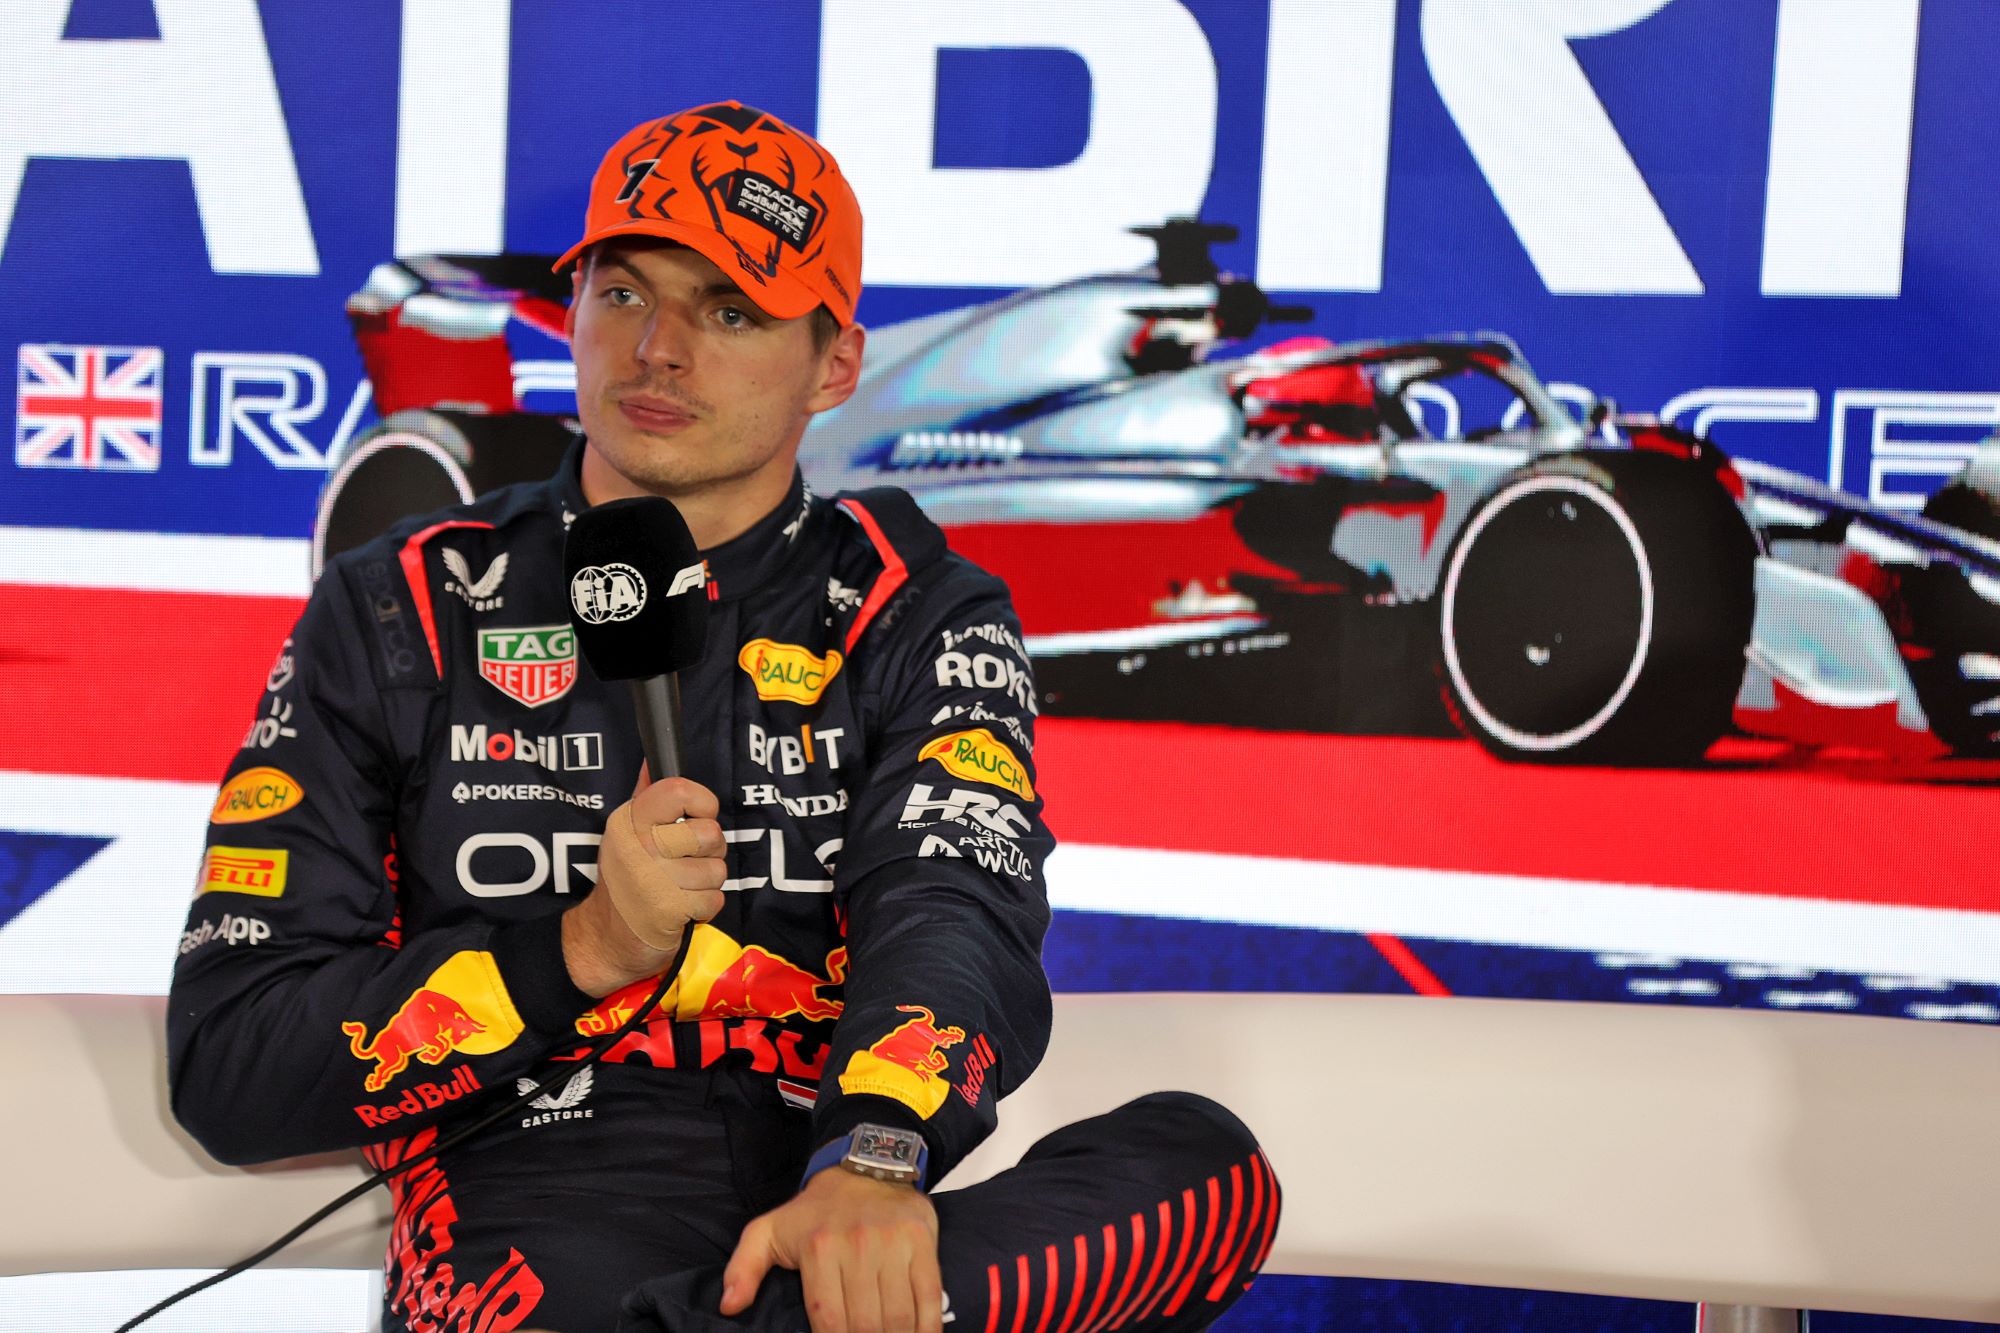 F1: Max Verstappen revela lesão no dedo durante o GP da Inglaterra